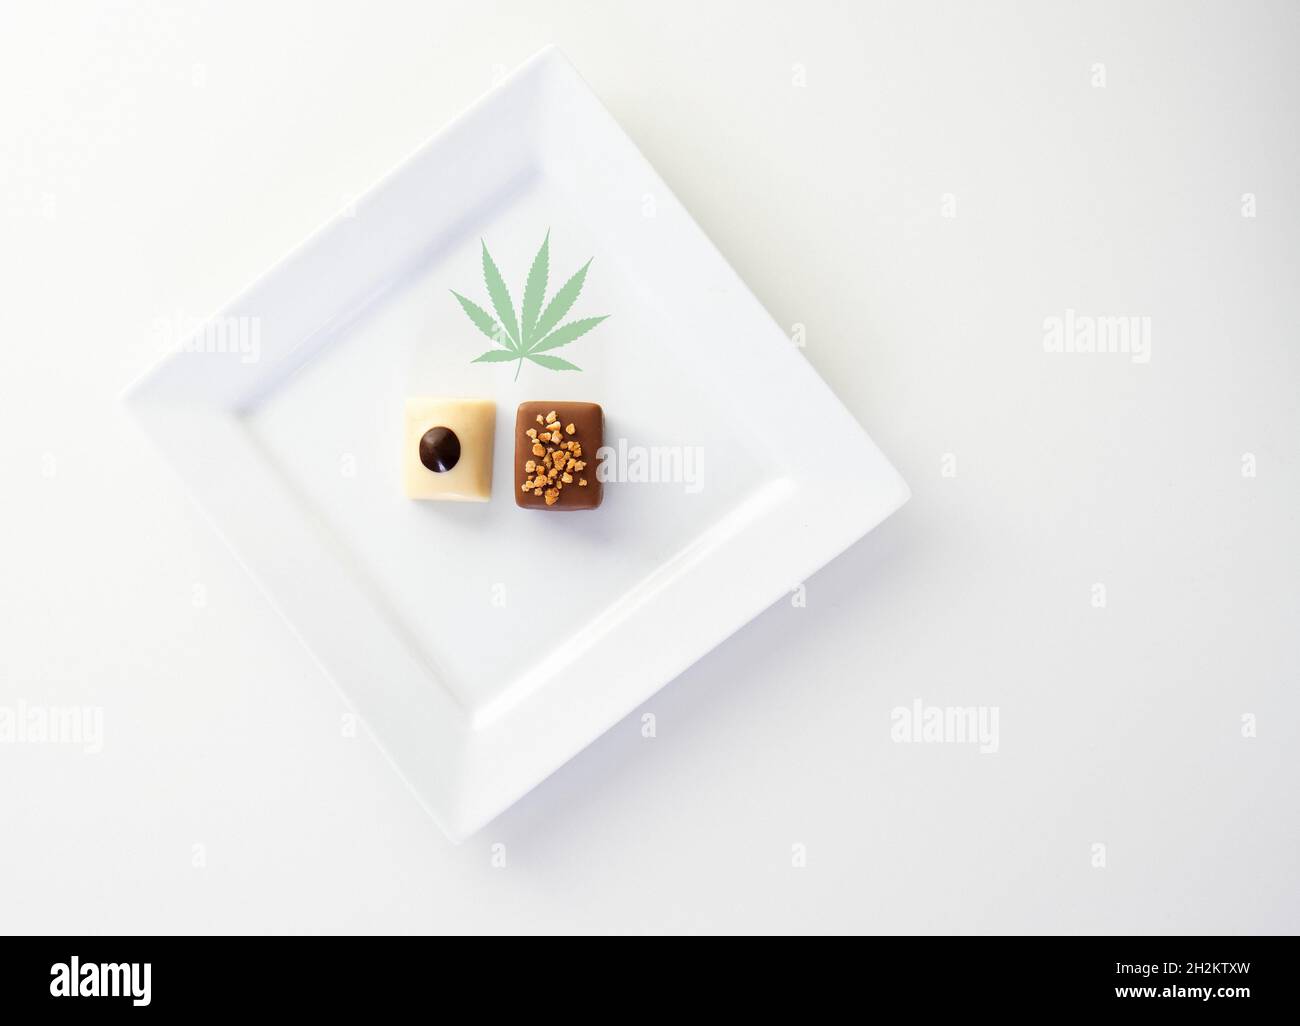 Chocolats infusés au cannabis, image conceptuelle Banque D'Images